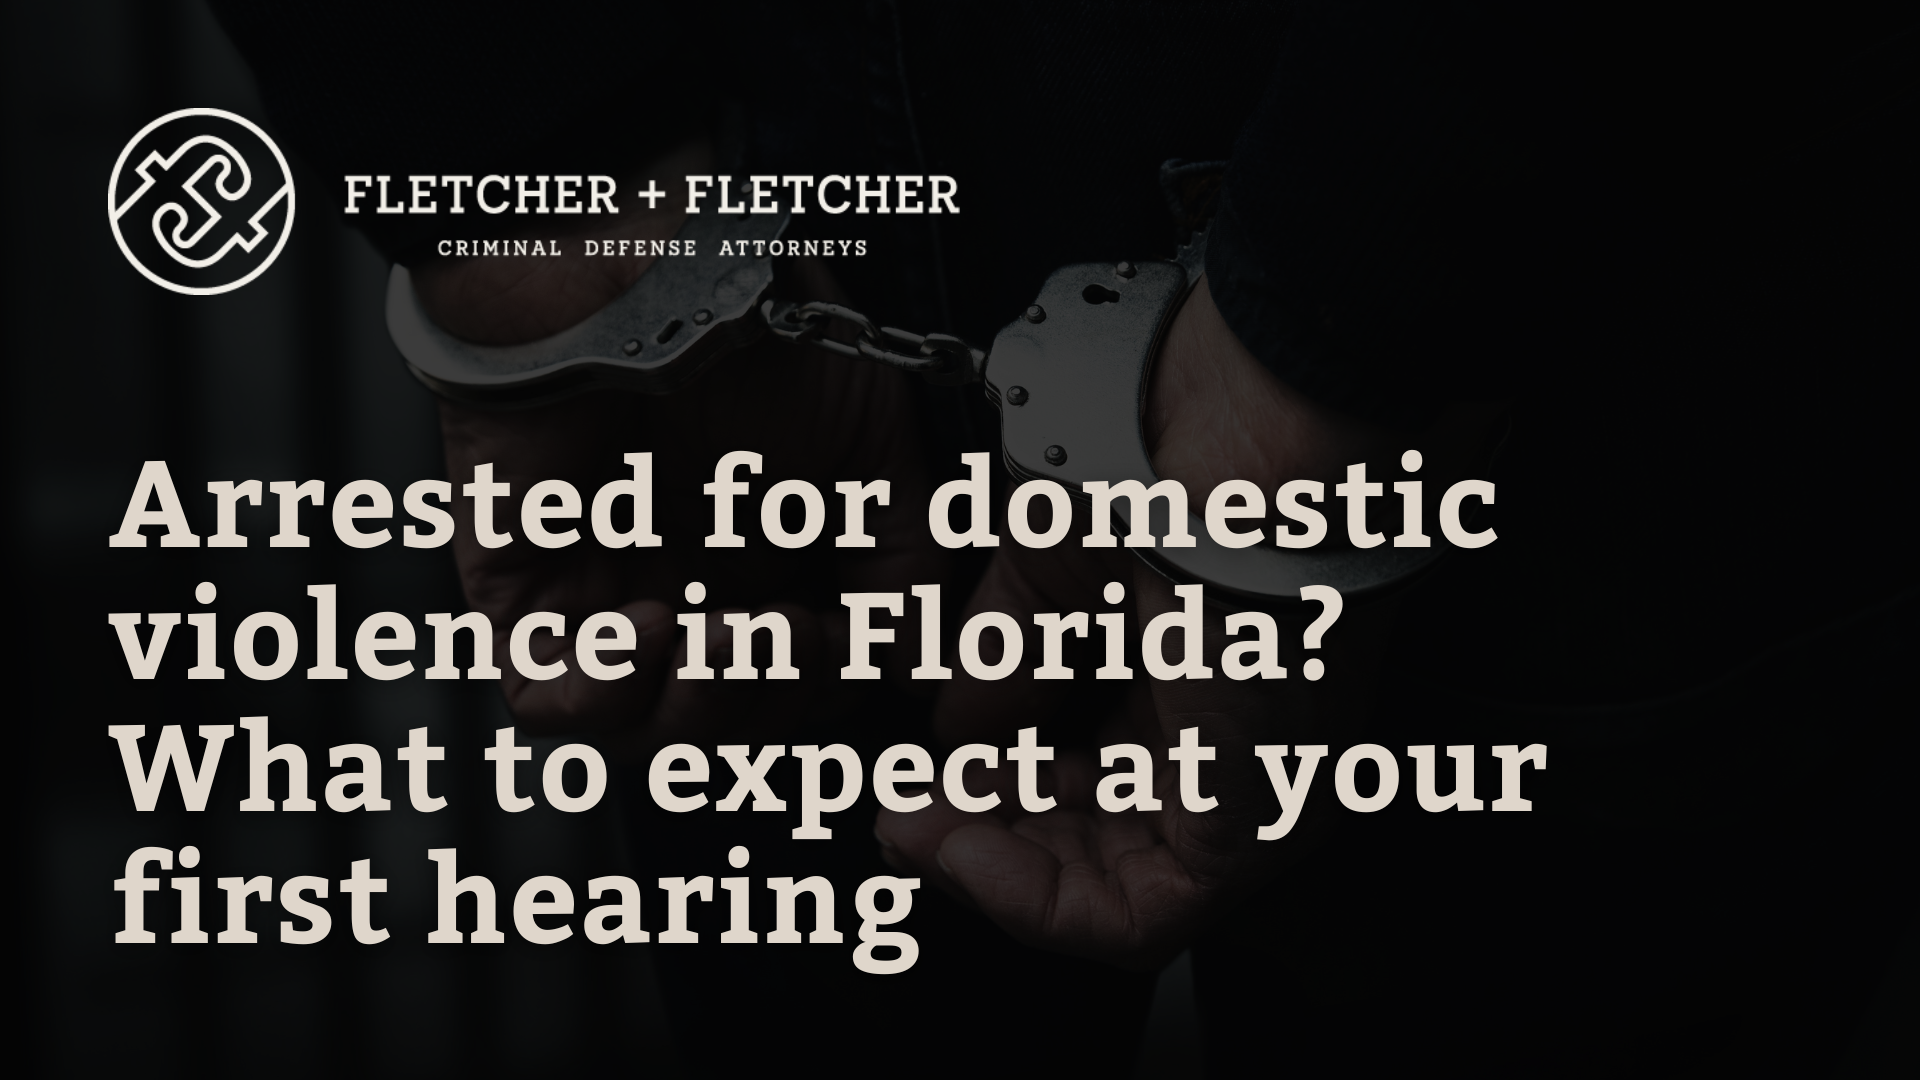 Arrested for domestic violence in Florida - Fletcher Fletcher Florida criminal defense lawyers